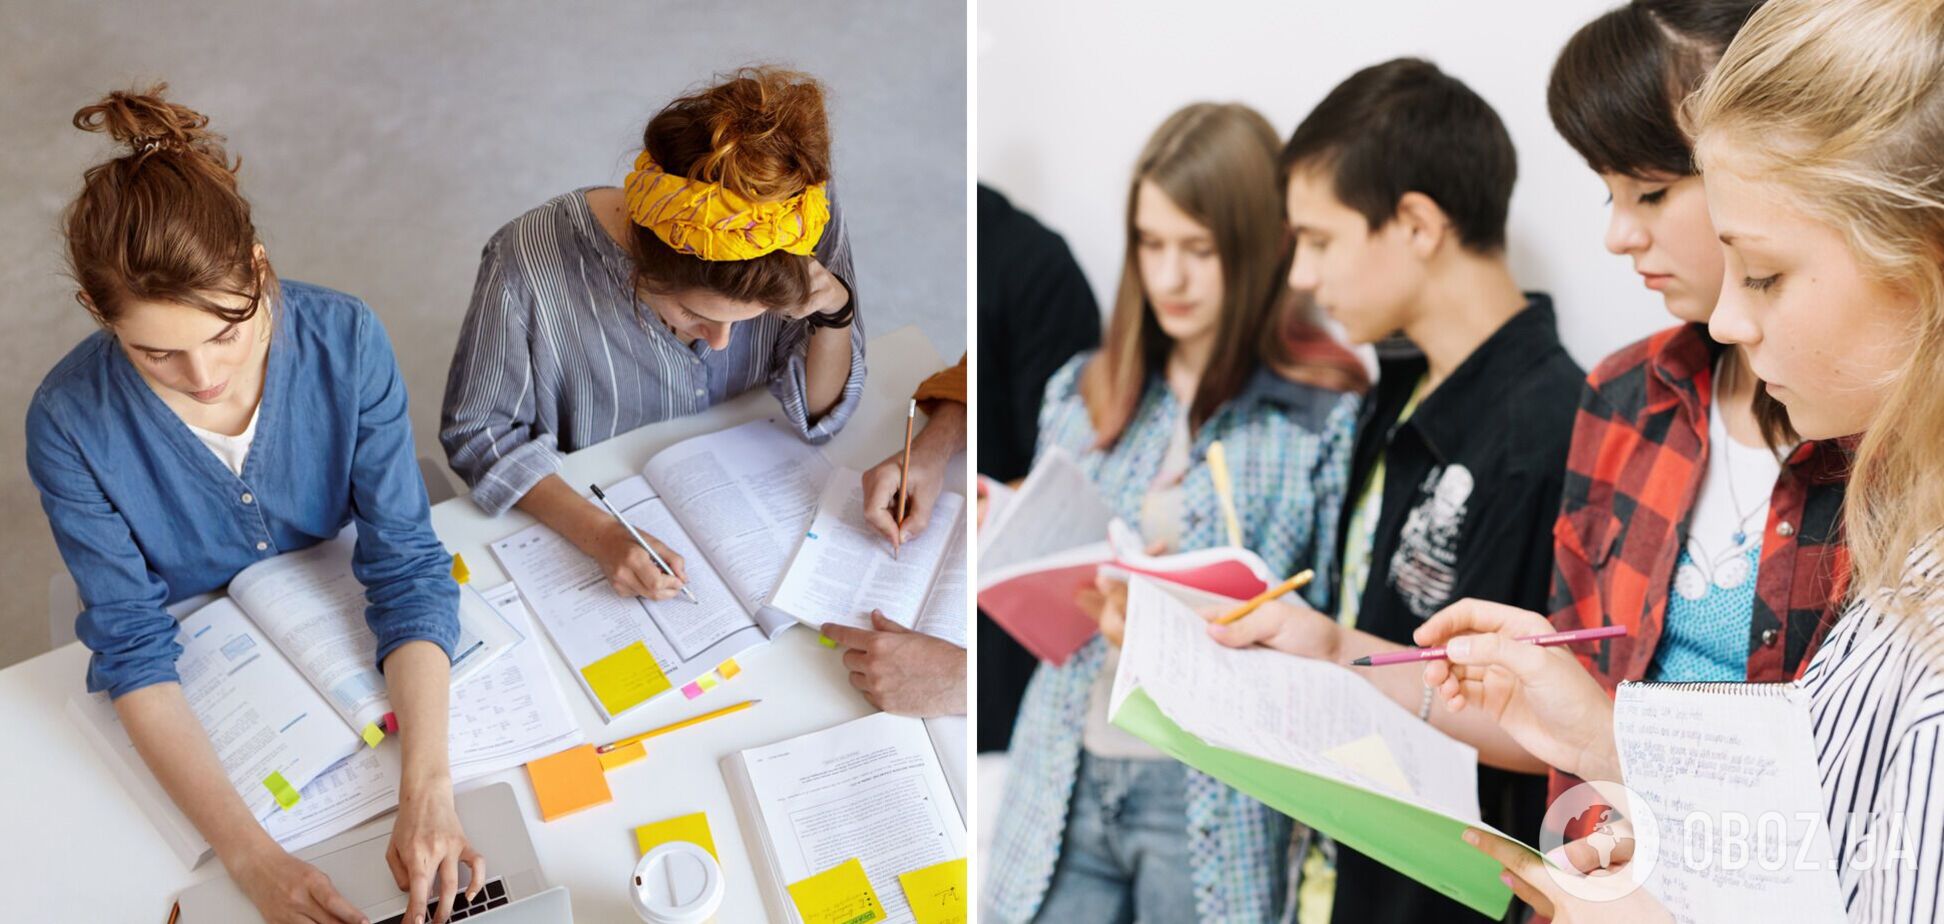 Дисциплин в 10-м классе станет вдвое меньше, а у учащихся будет выбор: как хотят изменить старшую школу в Украине